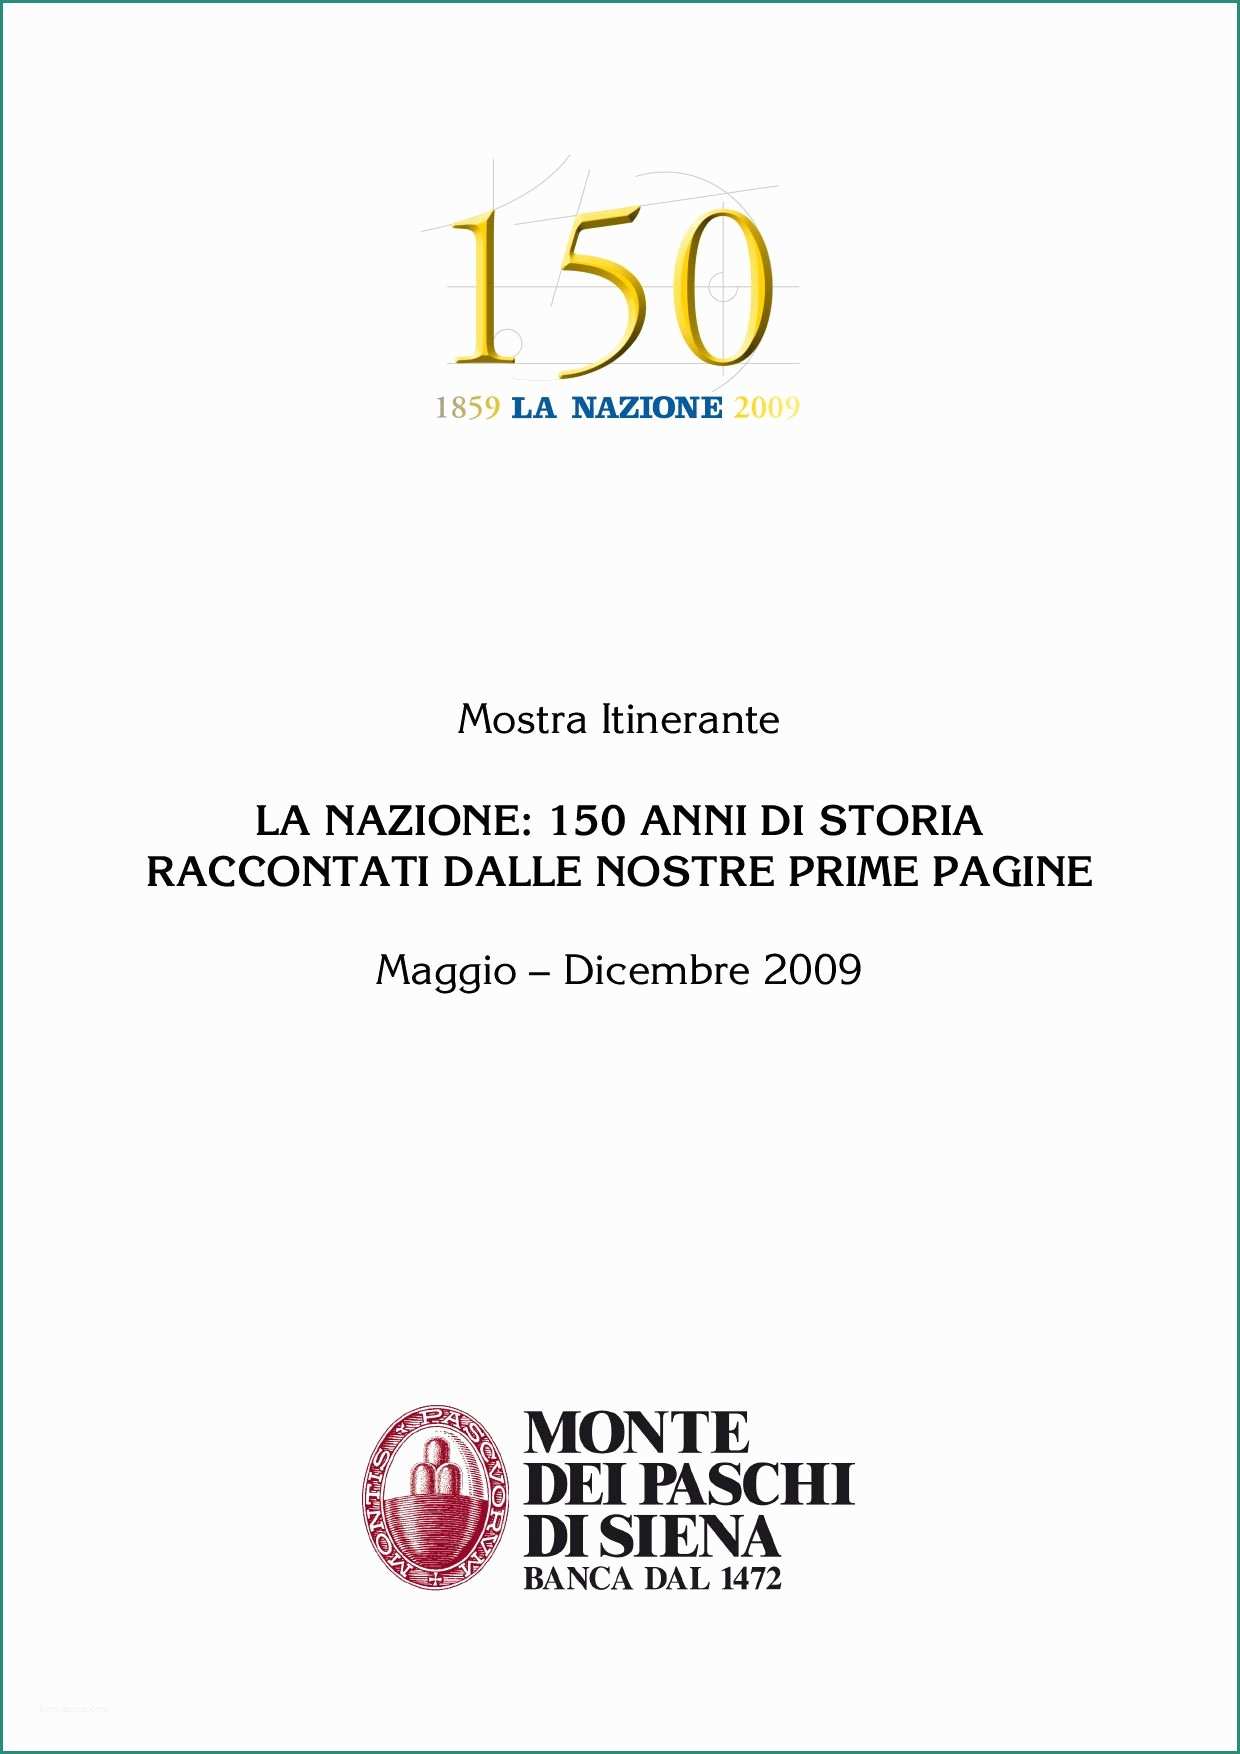 Misure Divano Posti E 150 Anni De La Nazione by Michele Accursi issuu